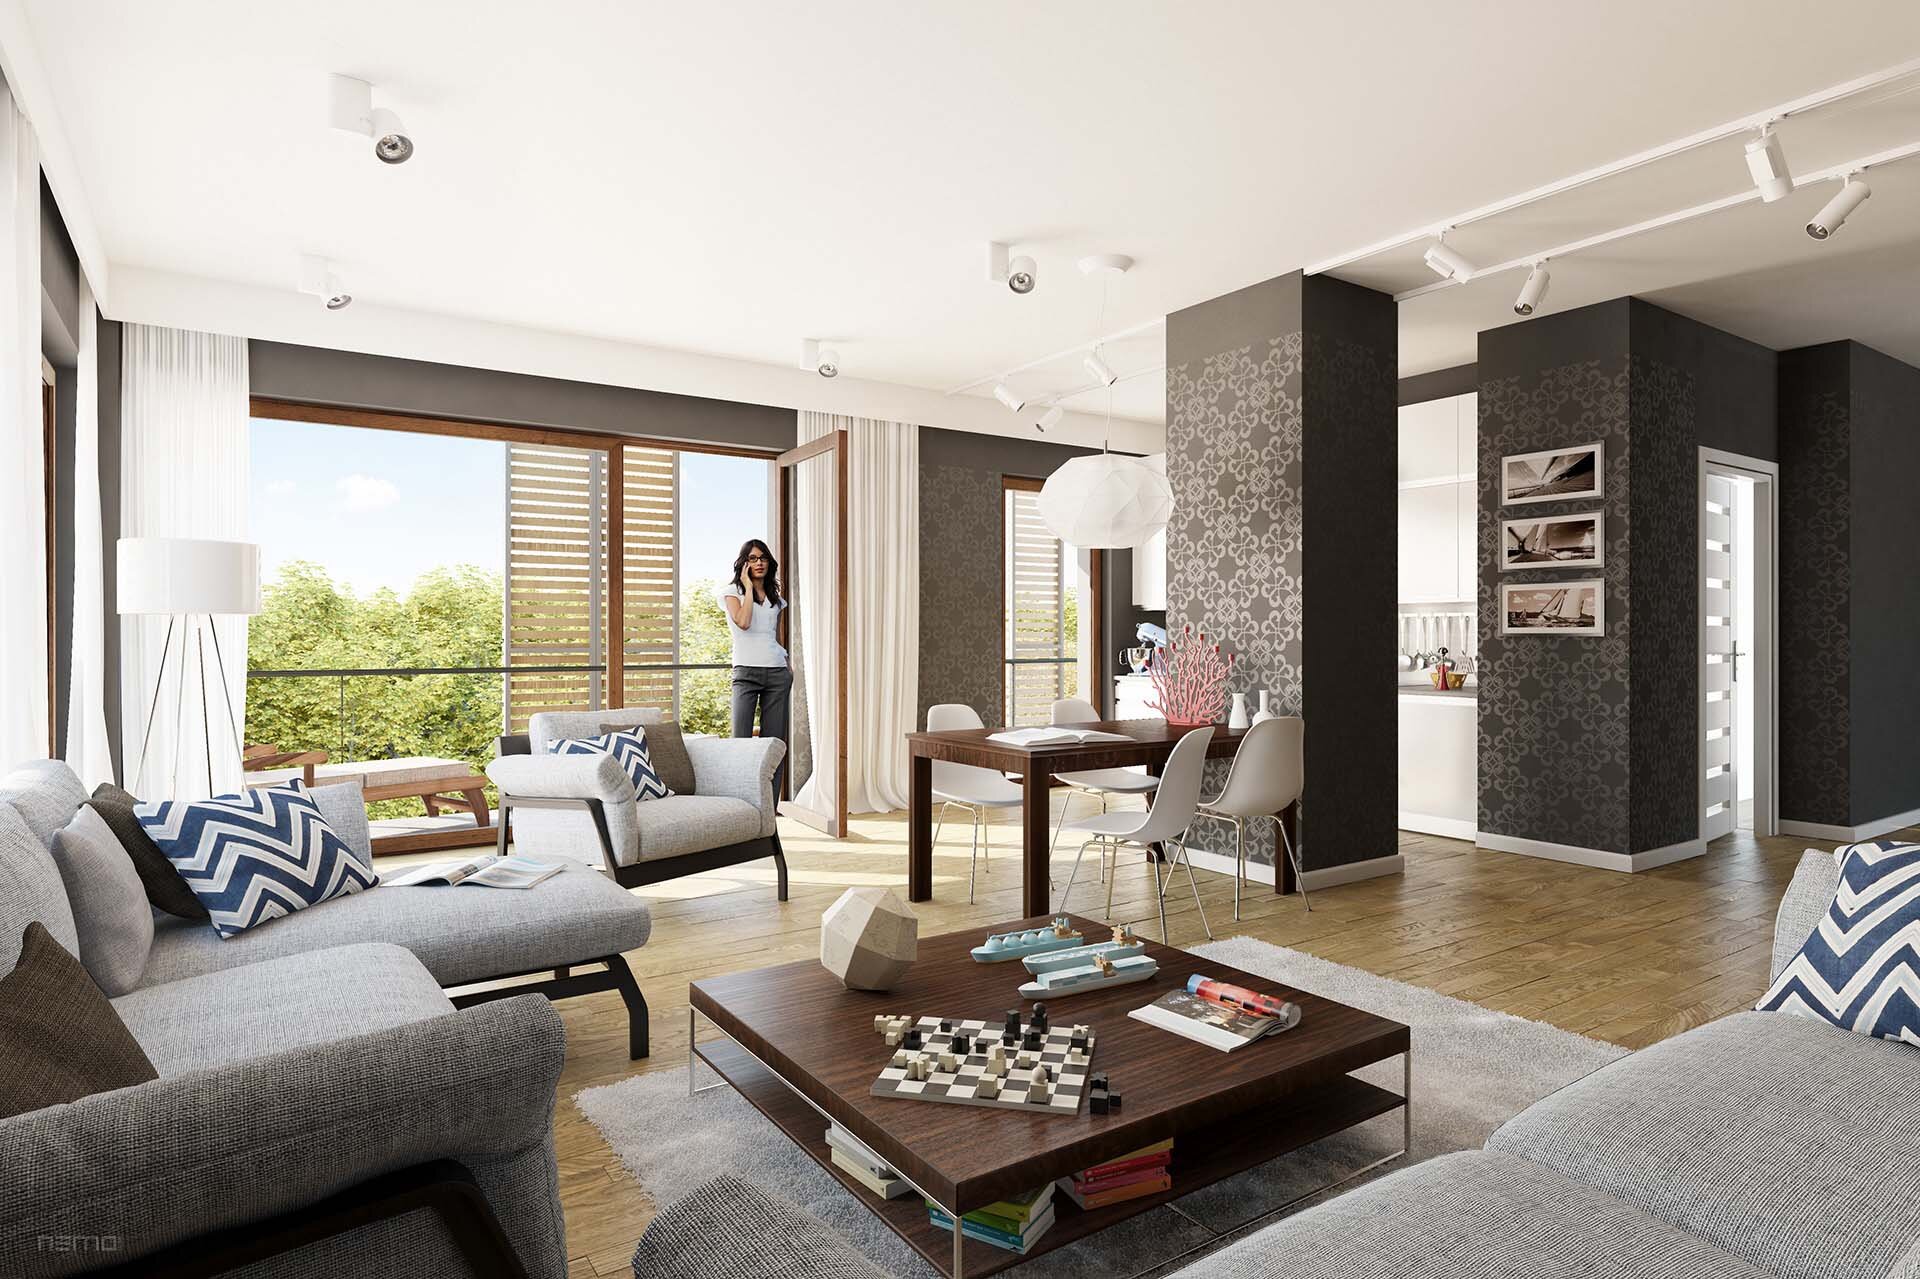 wizualizacja luksusowego apartamentu mieszkalnego. nowoczesny projekt wnętrza.